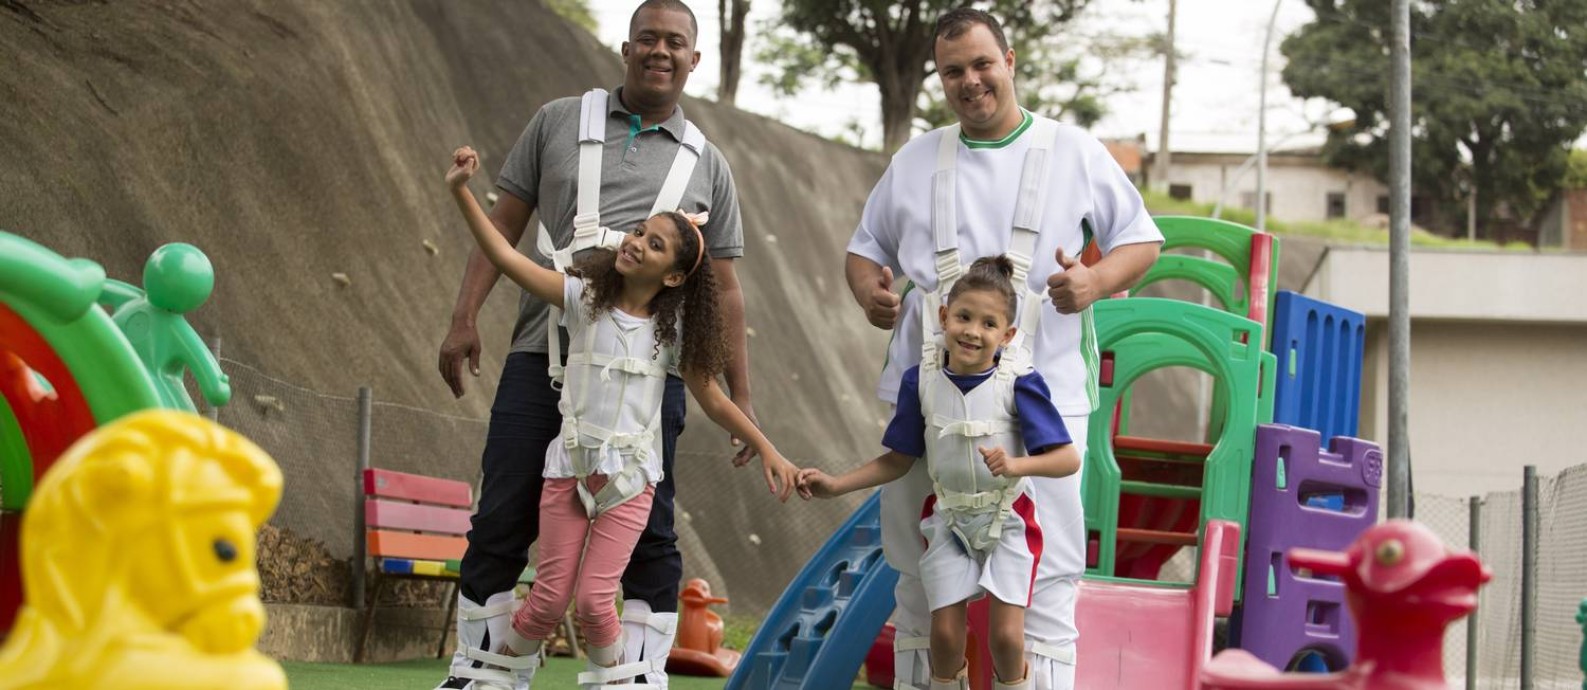 Nicole, de 9 anos, com o pai, Adriano Conceição; e Daniel, de 6 anos, com o pai, Fábio Gonçalves, em Nova Iguaçu Foto: Antonio Scorza / Agência O Globo